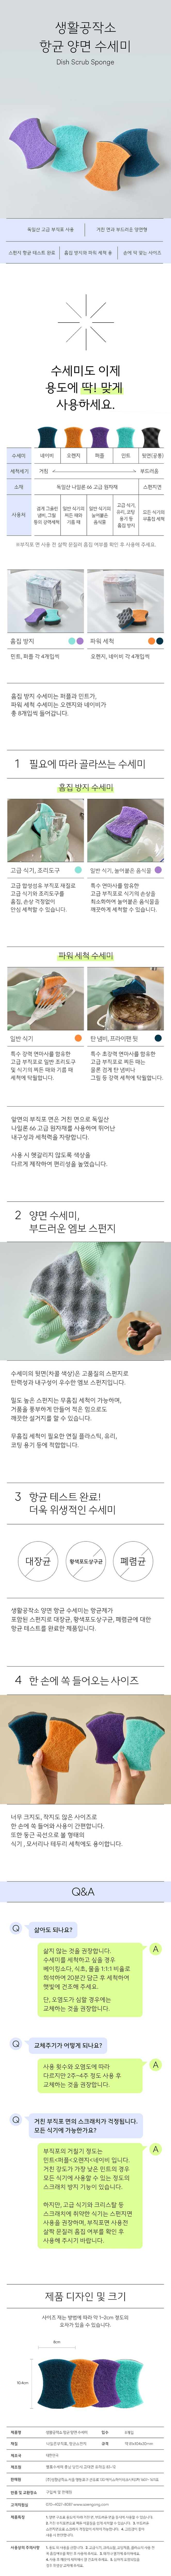 생활공작소 향균 양면 수세미 8개입 (파워세척  흠집방지) [Sanggong]Dish Scrub Sponge